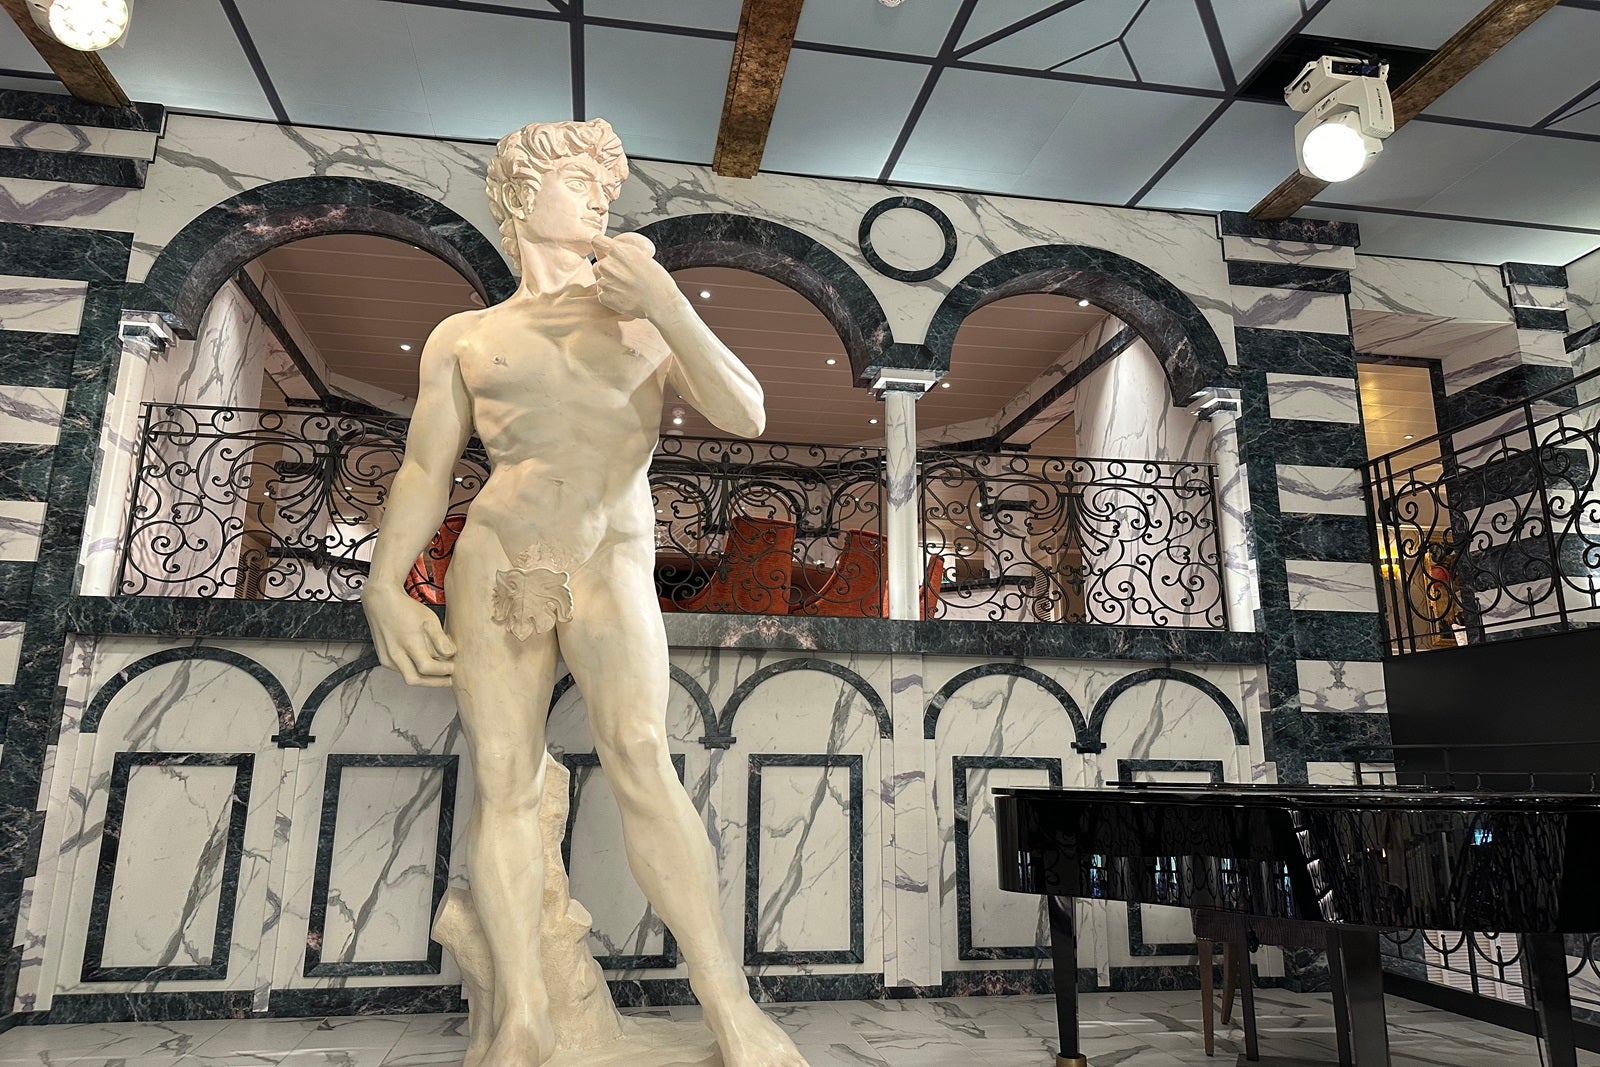 A replica of Michelangelo's David statue